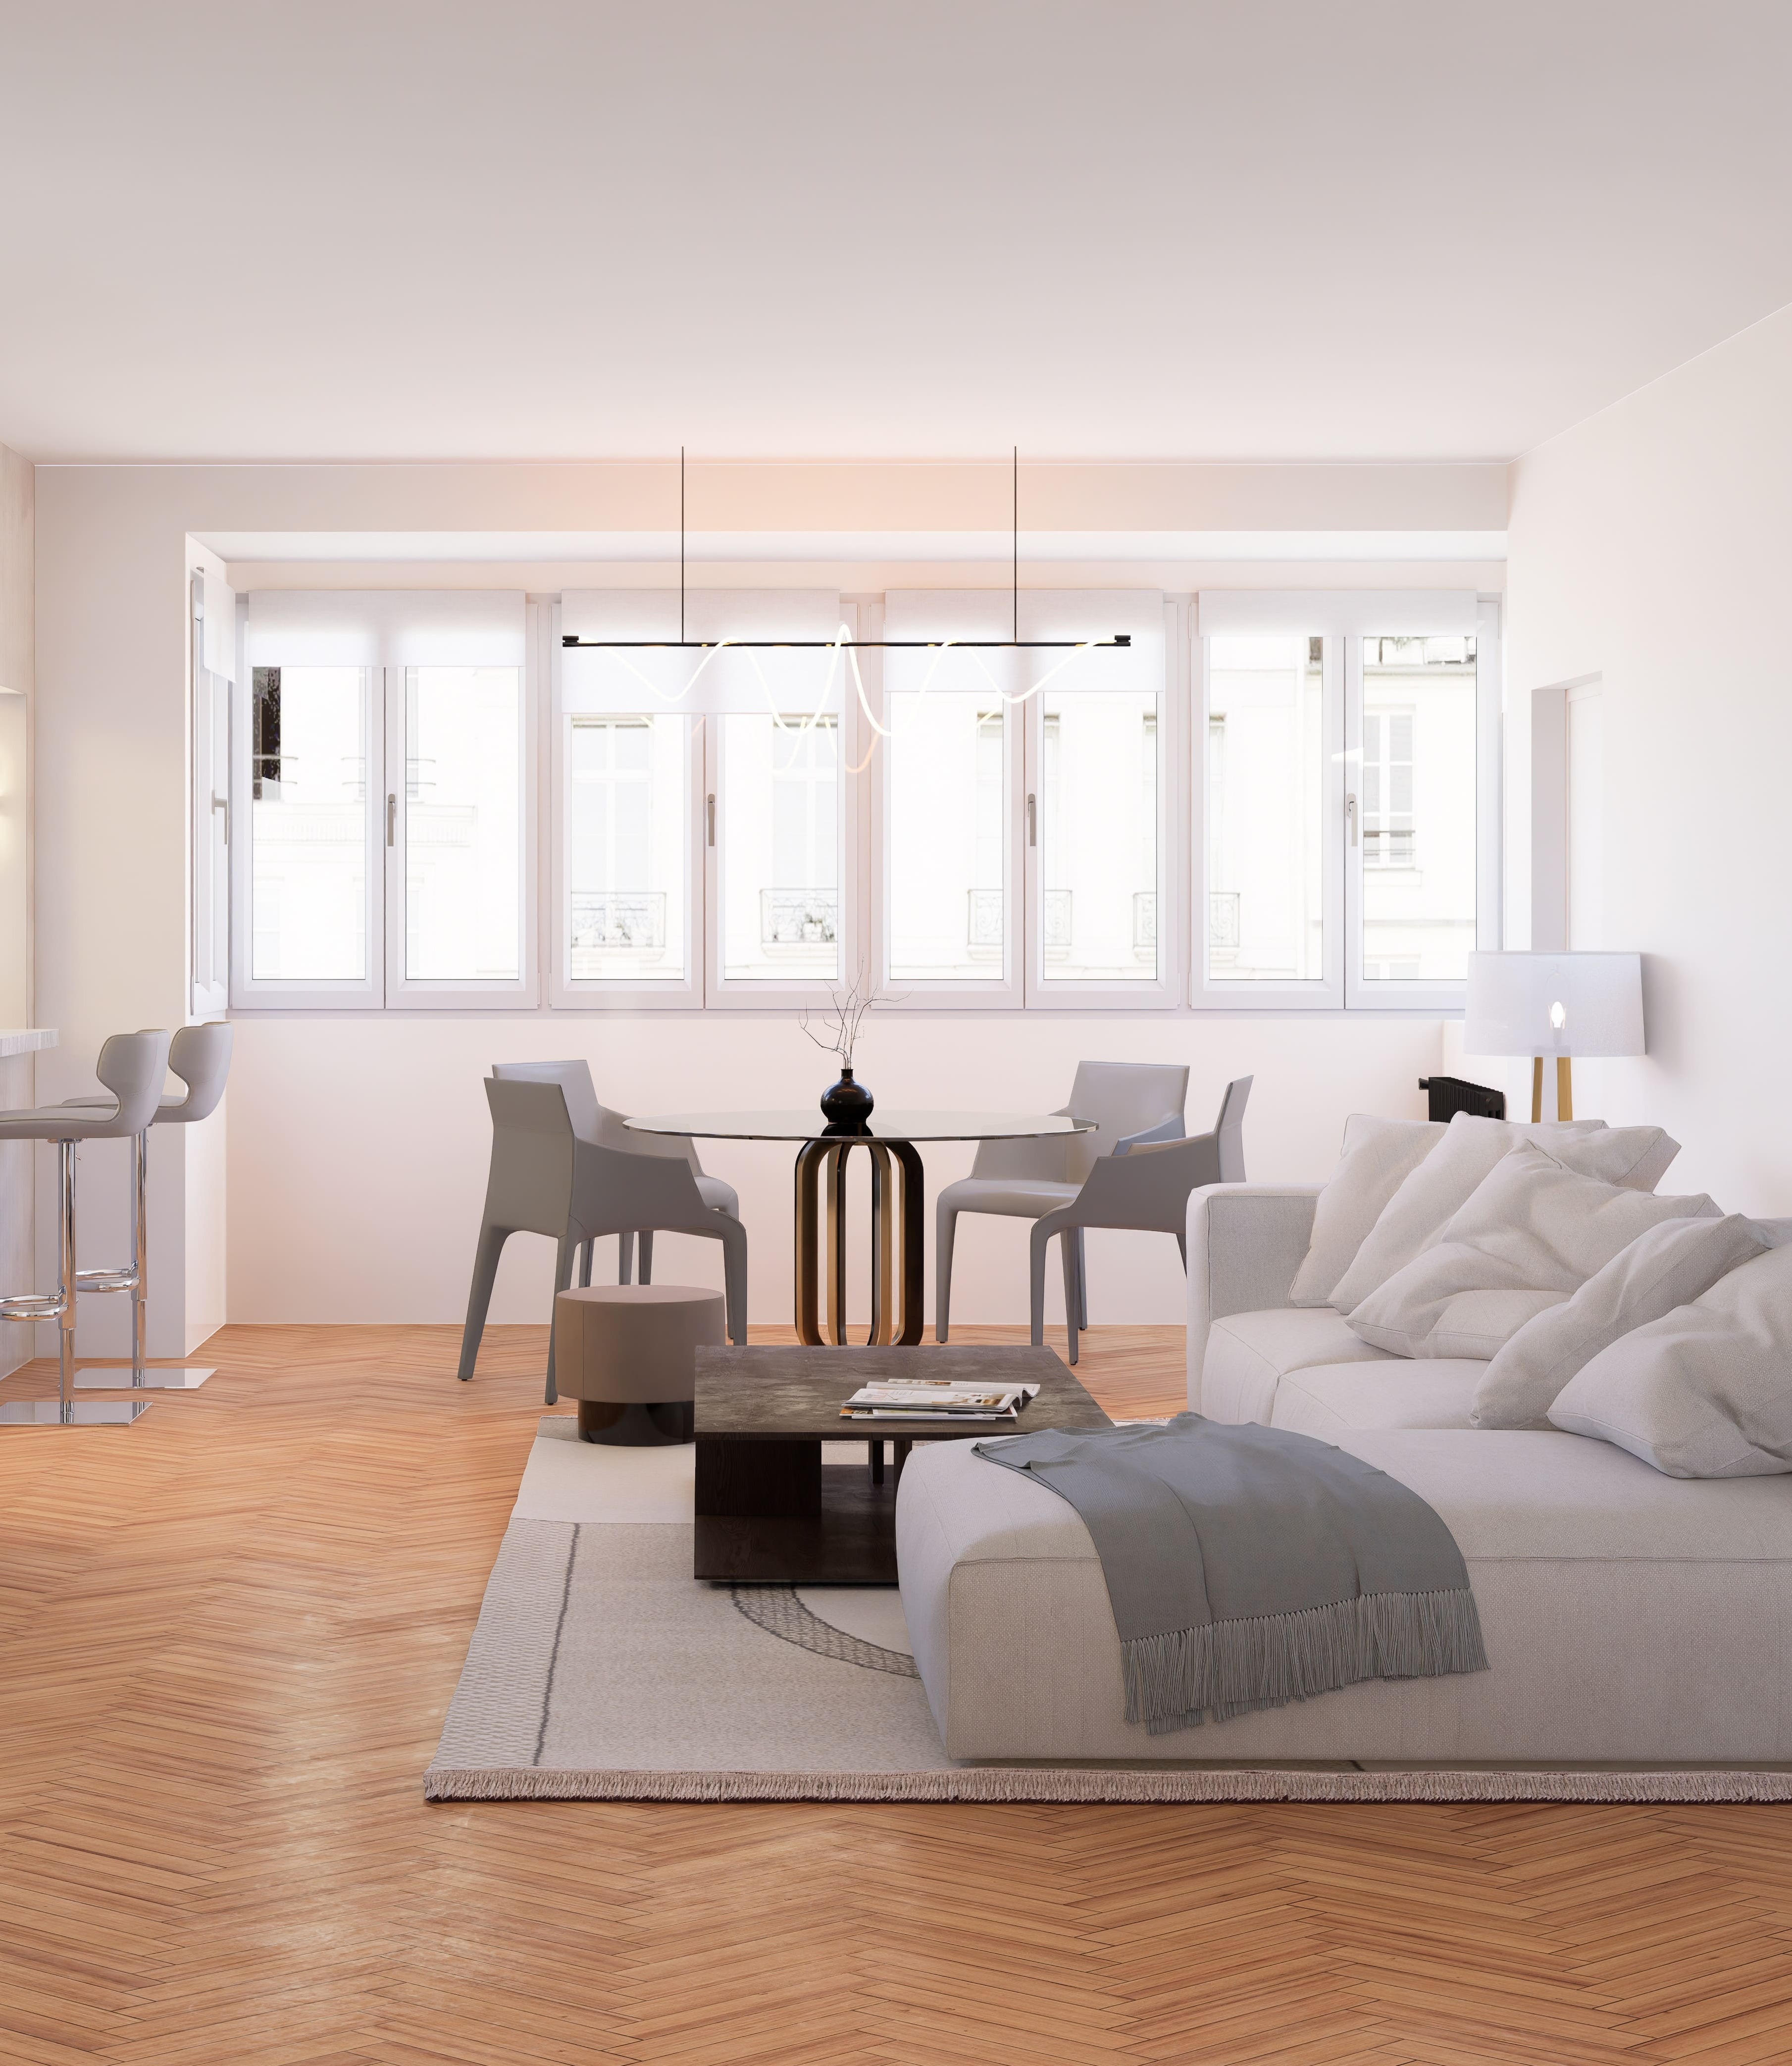 ab3d design - rendu 3d Projet d'appartement en partenariat avec THE AGENCY IMMO - Marseille